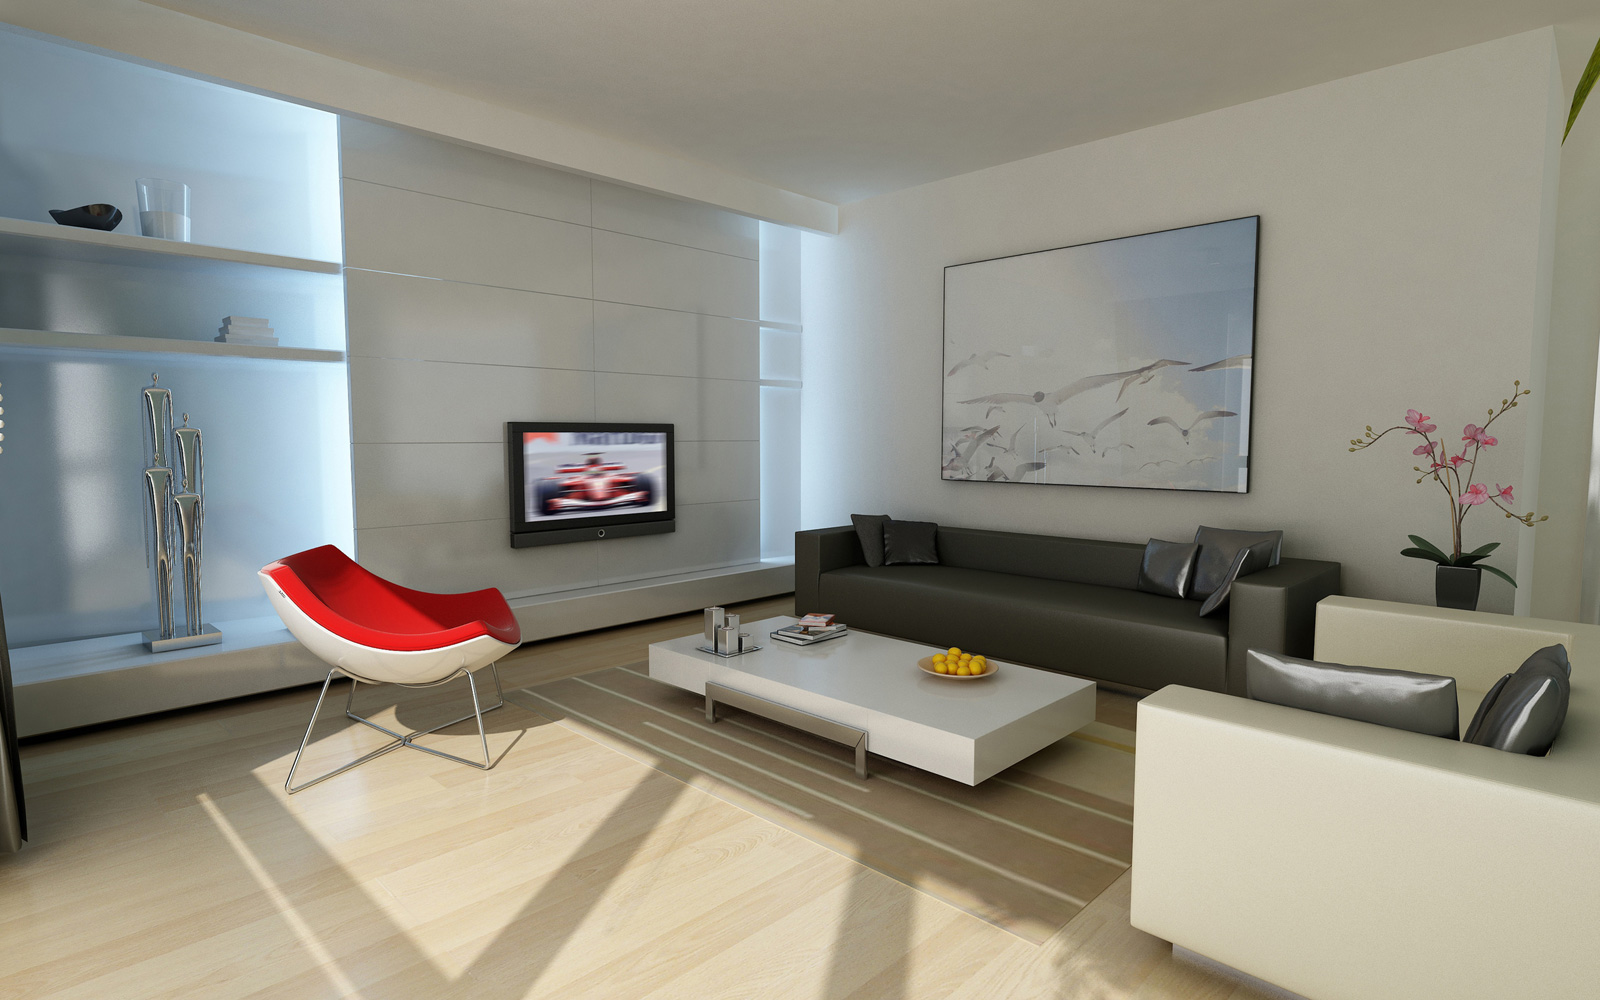 Stunning Minimalist Living Room Design Ideas